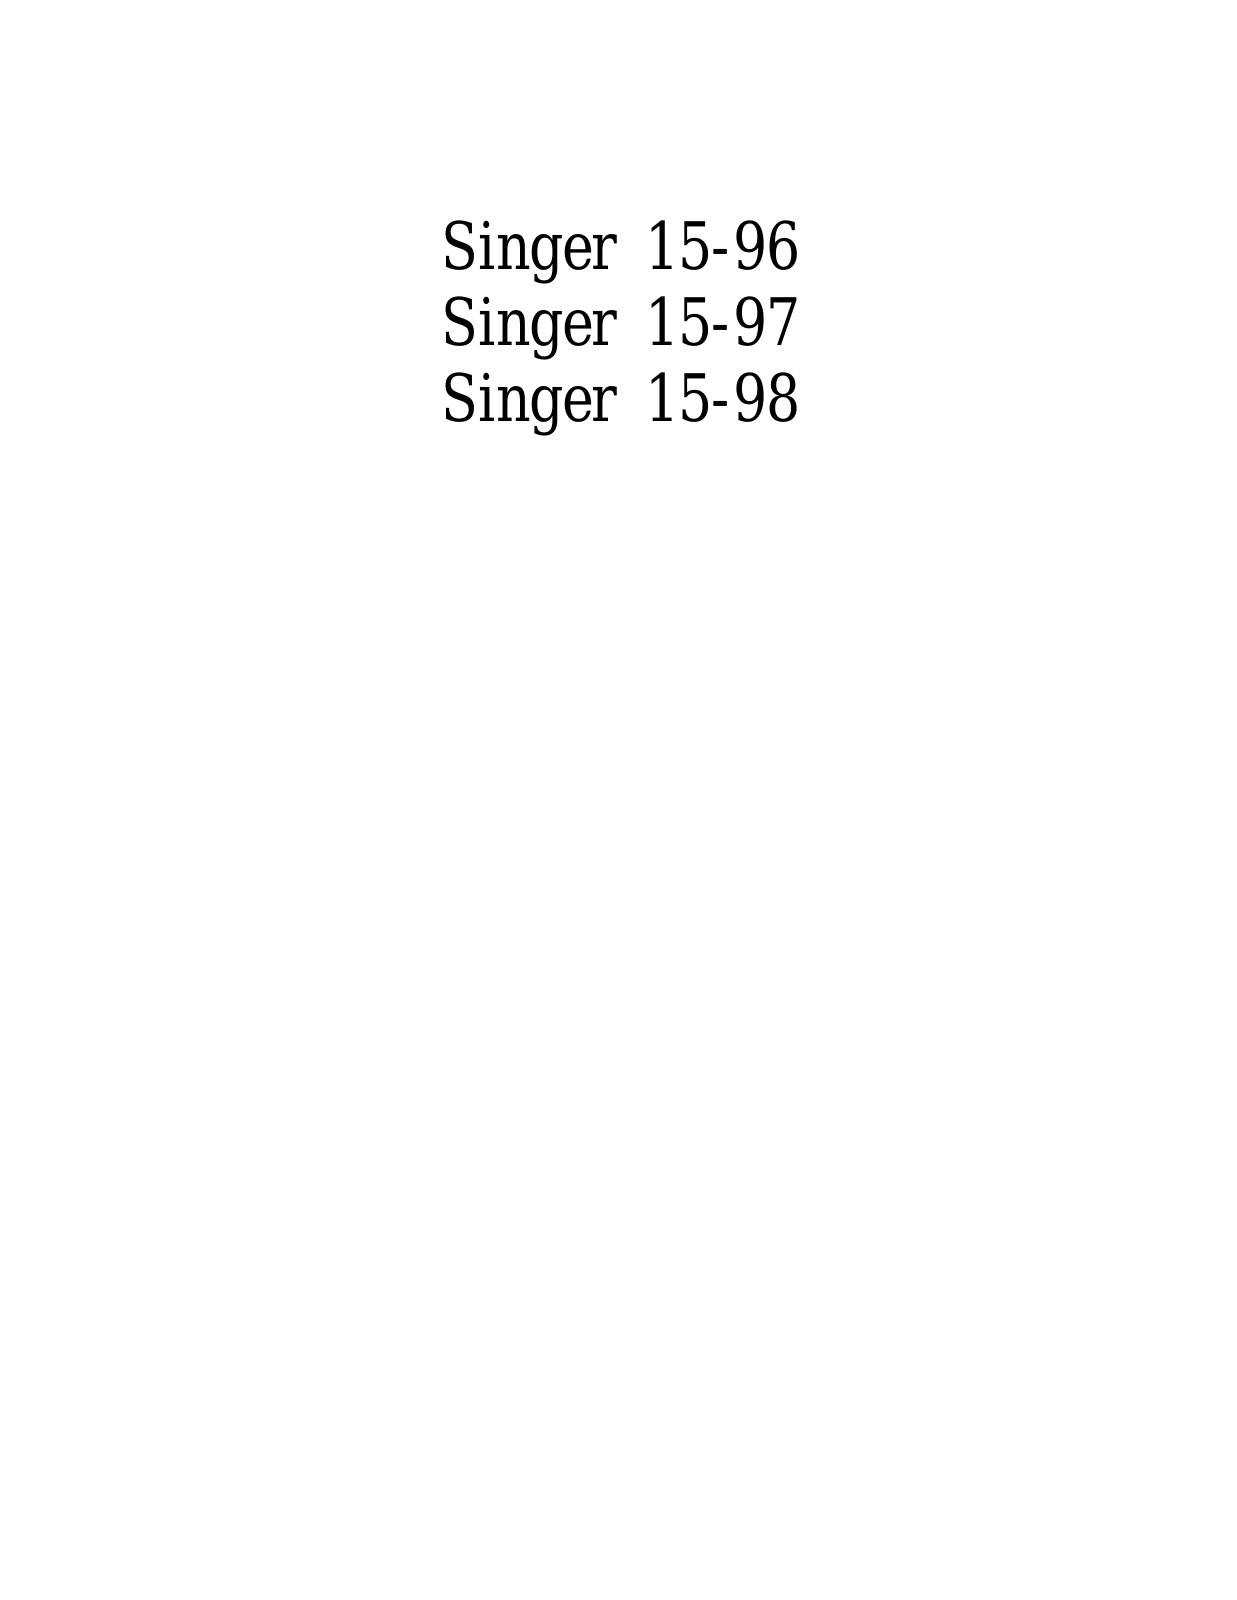 SINGER 15-96, 15-97, 15-98 Parts List